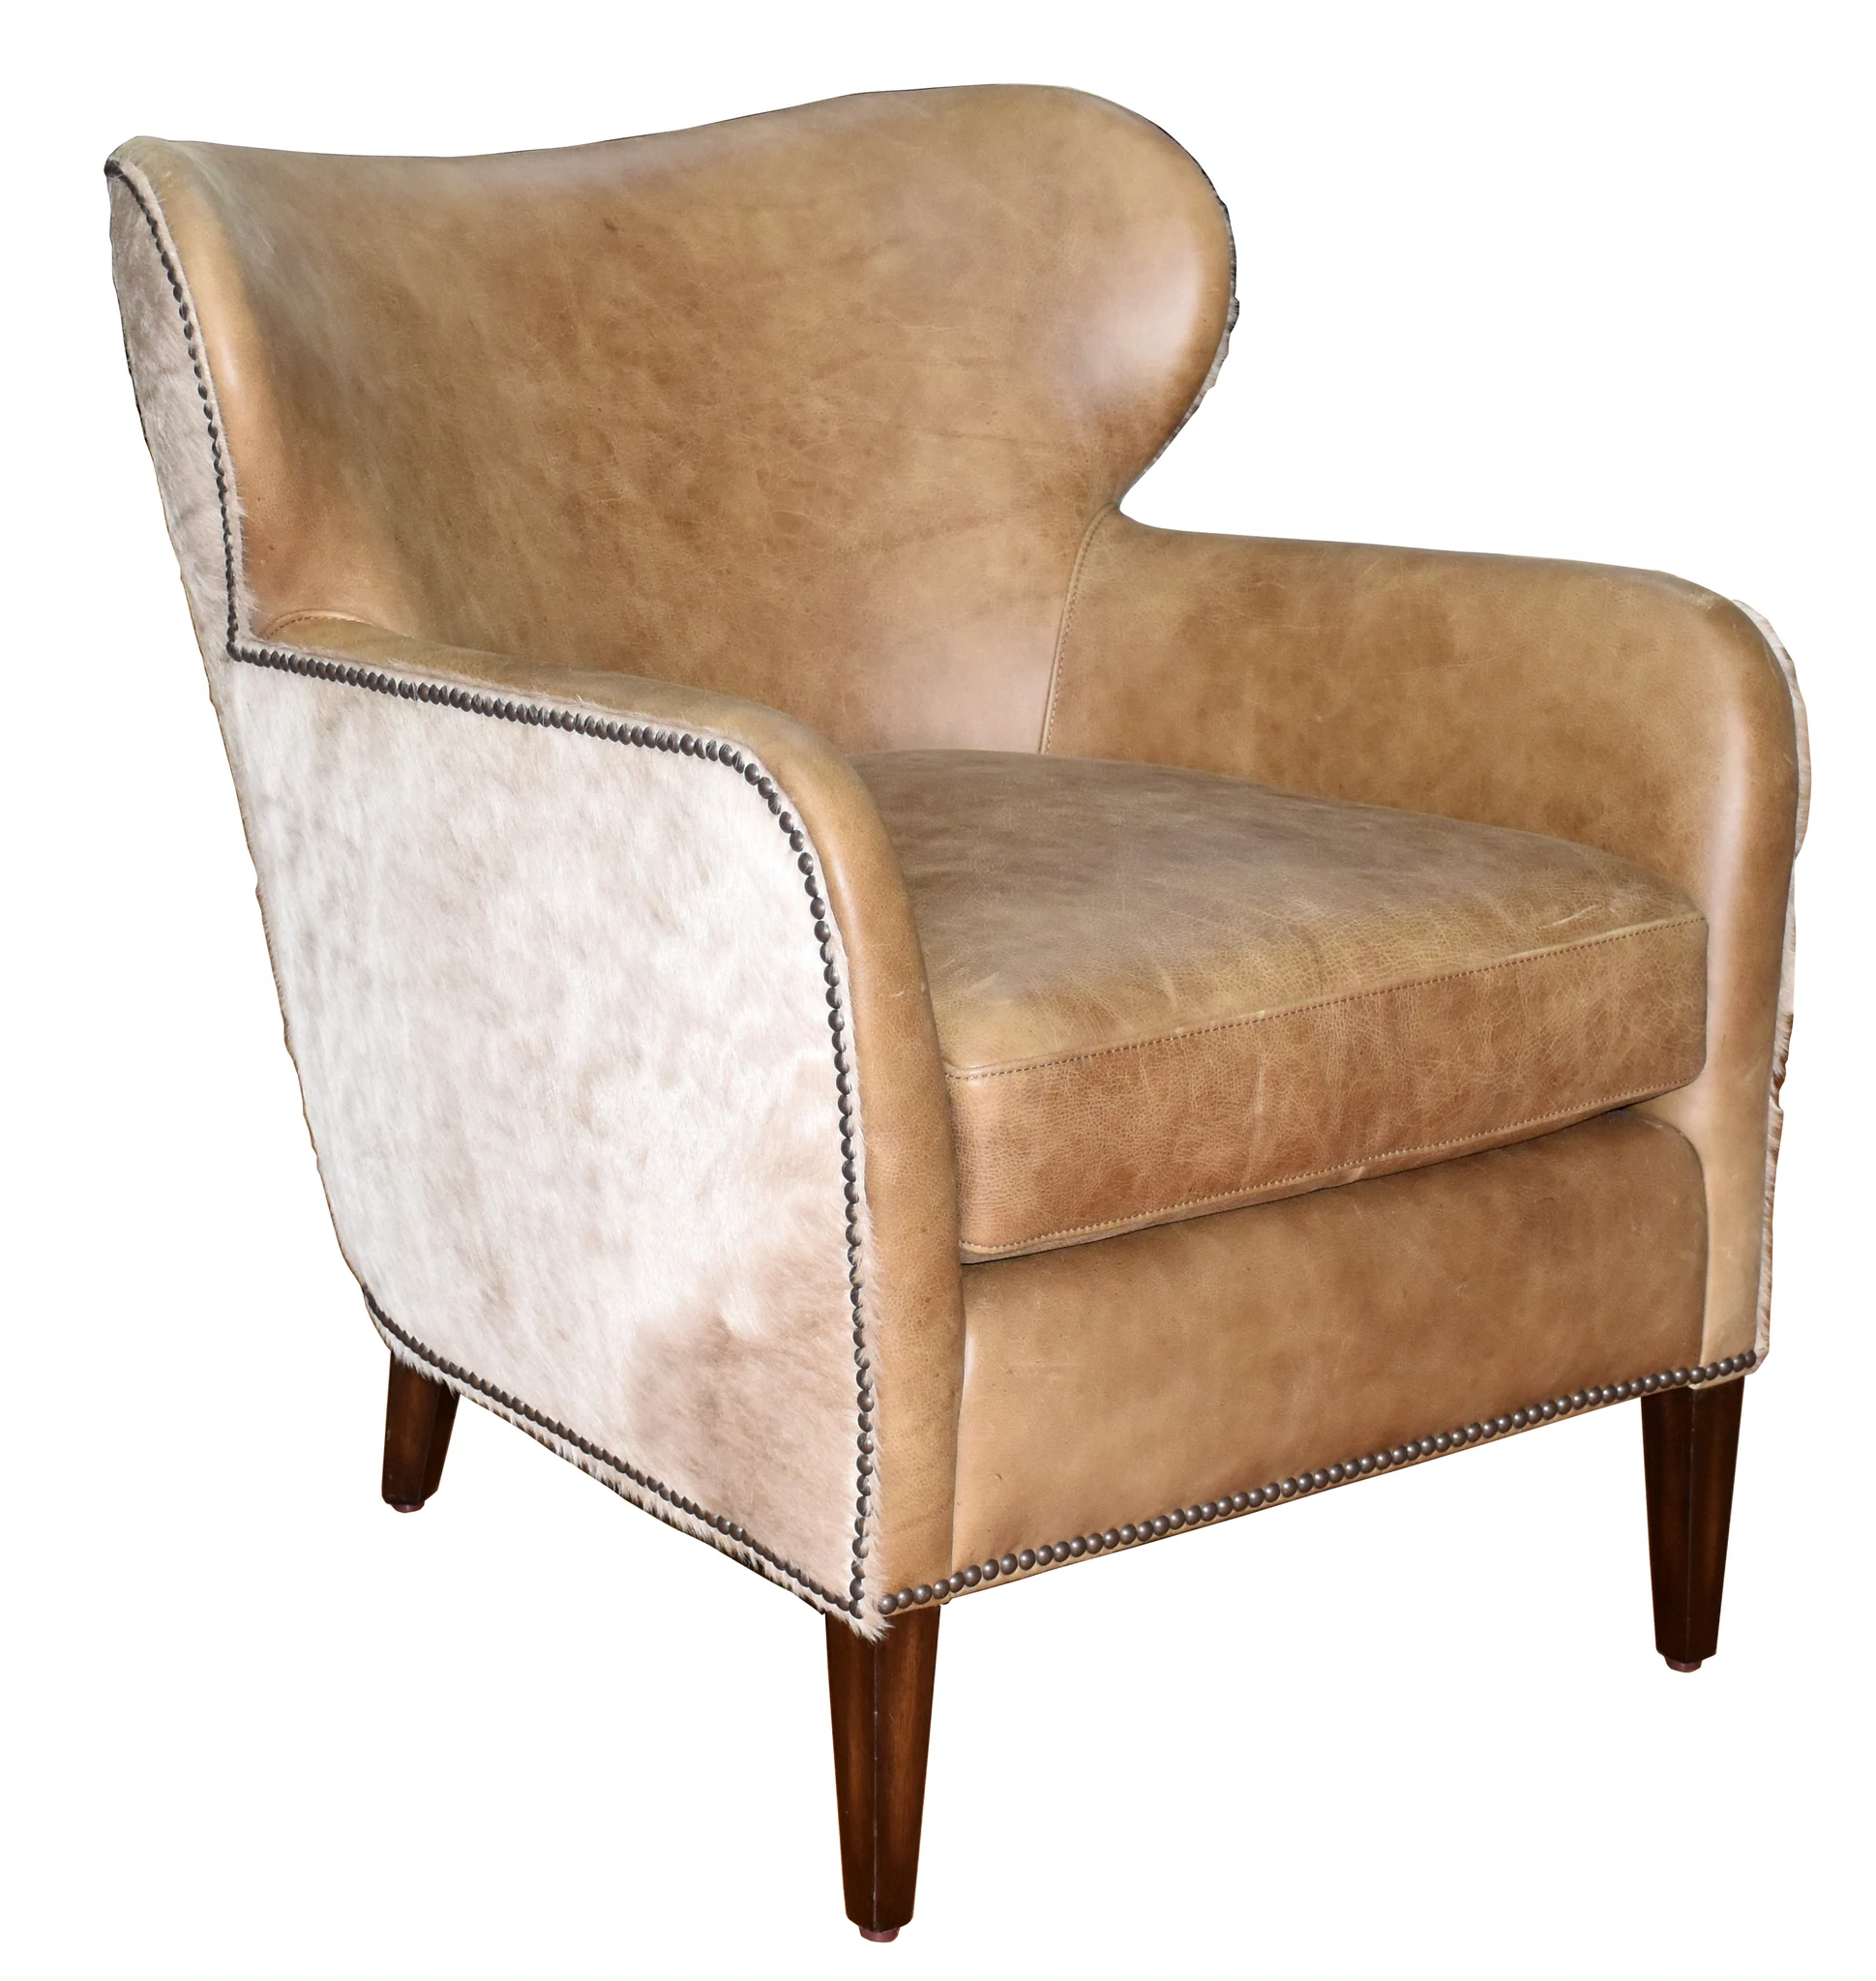 Orleans Chair – 8002-01